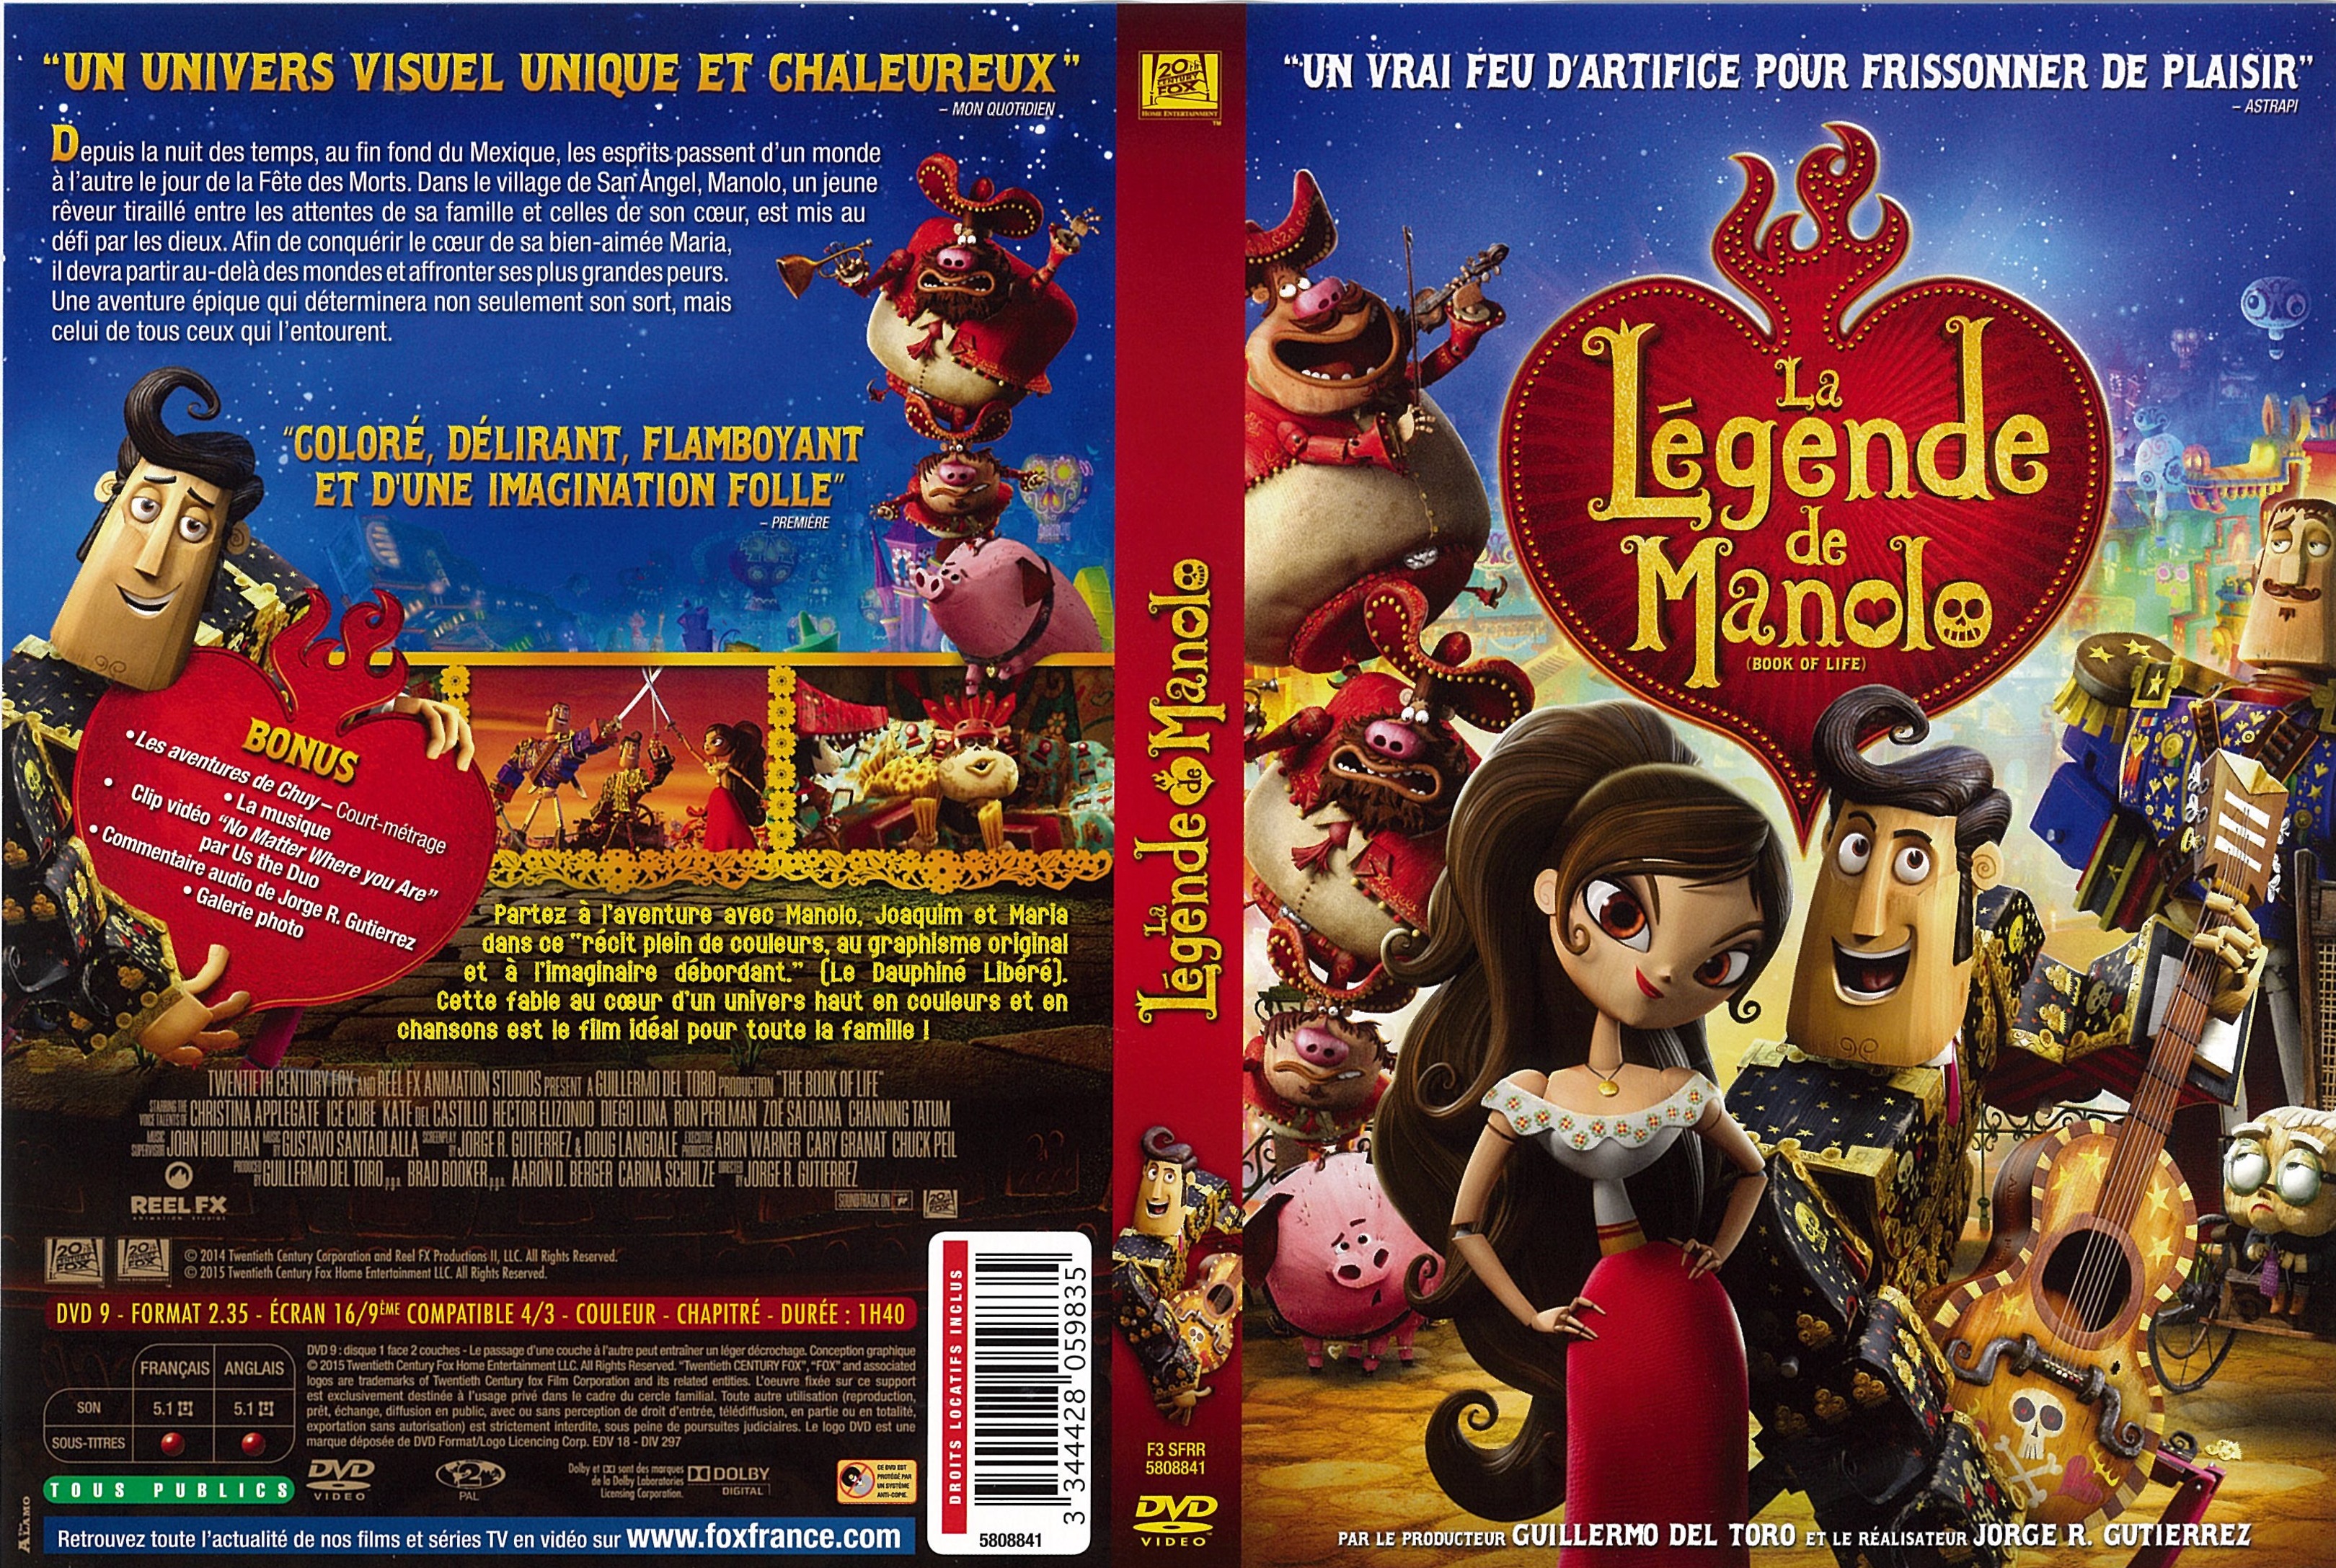 Jaquette DVD La Lgende de Manolo